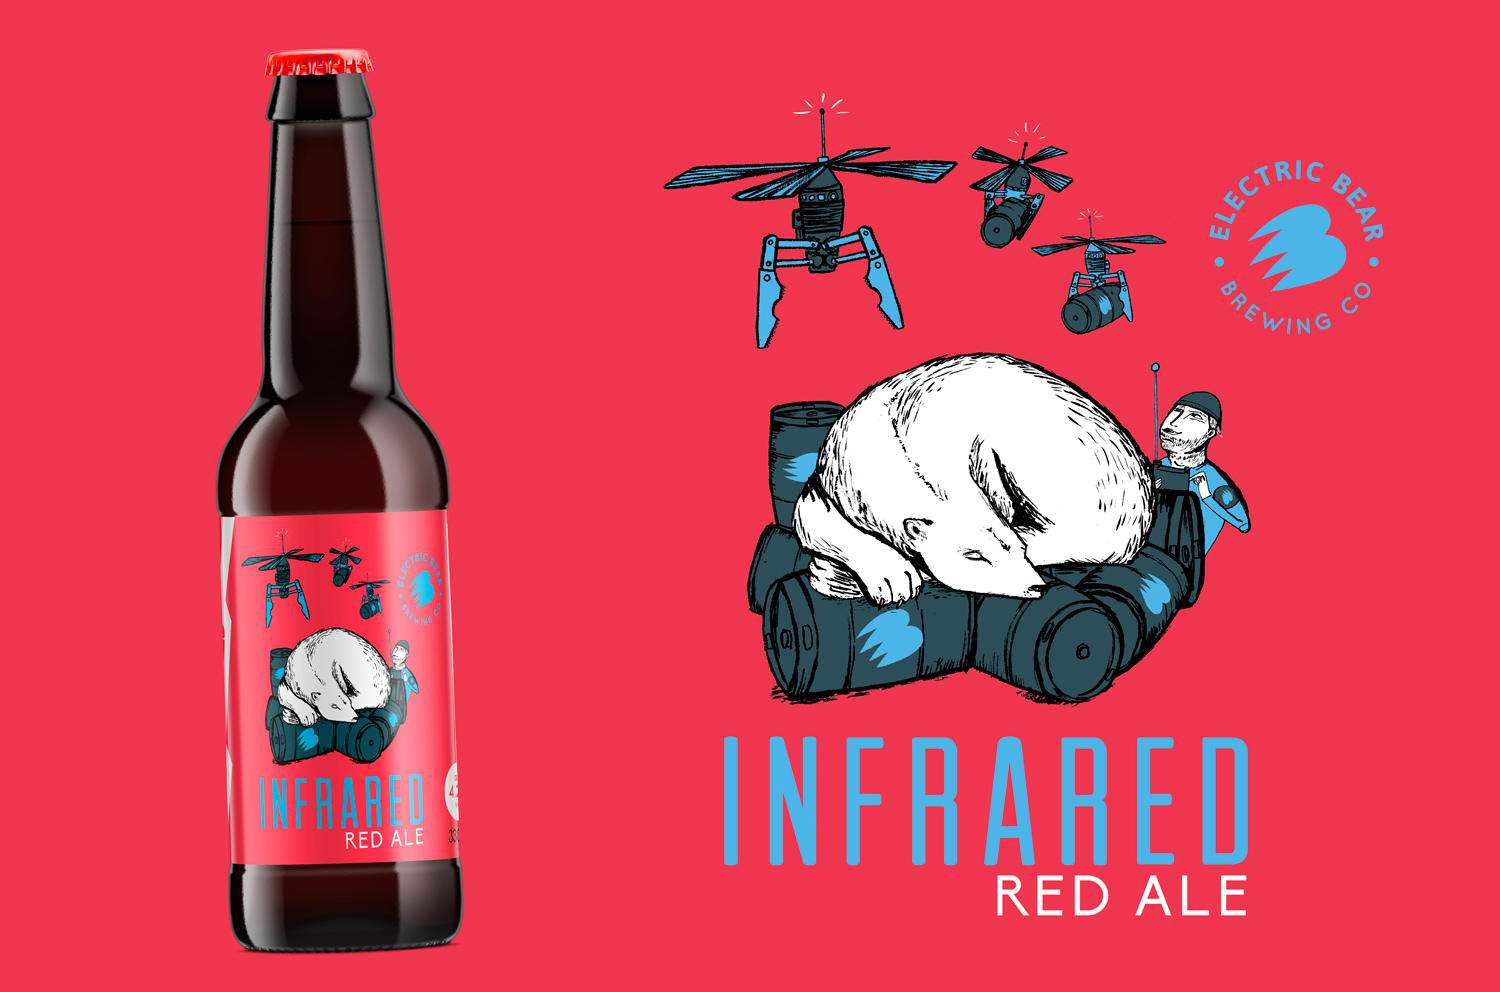 Infrared red ale bottle design, bear illustration